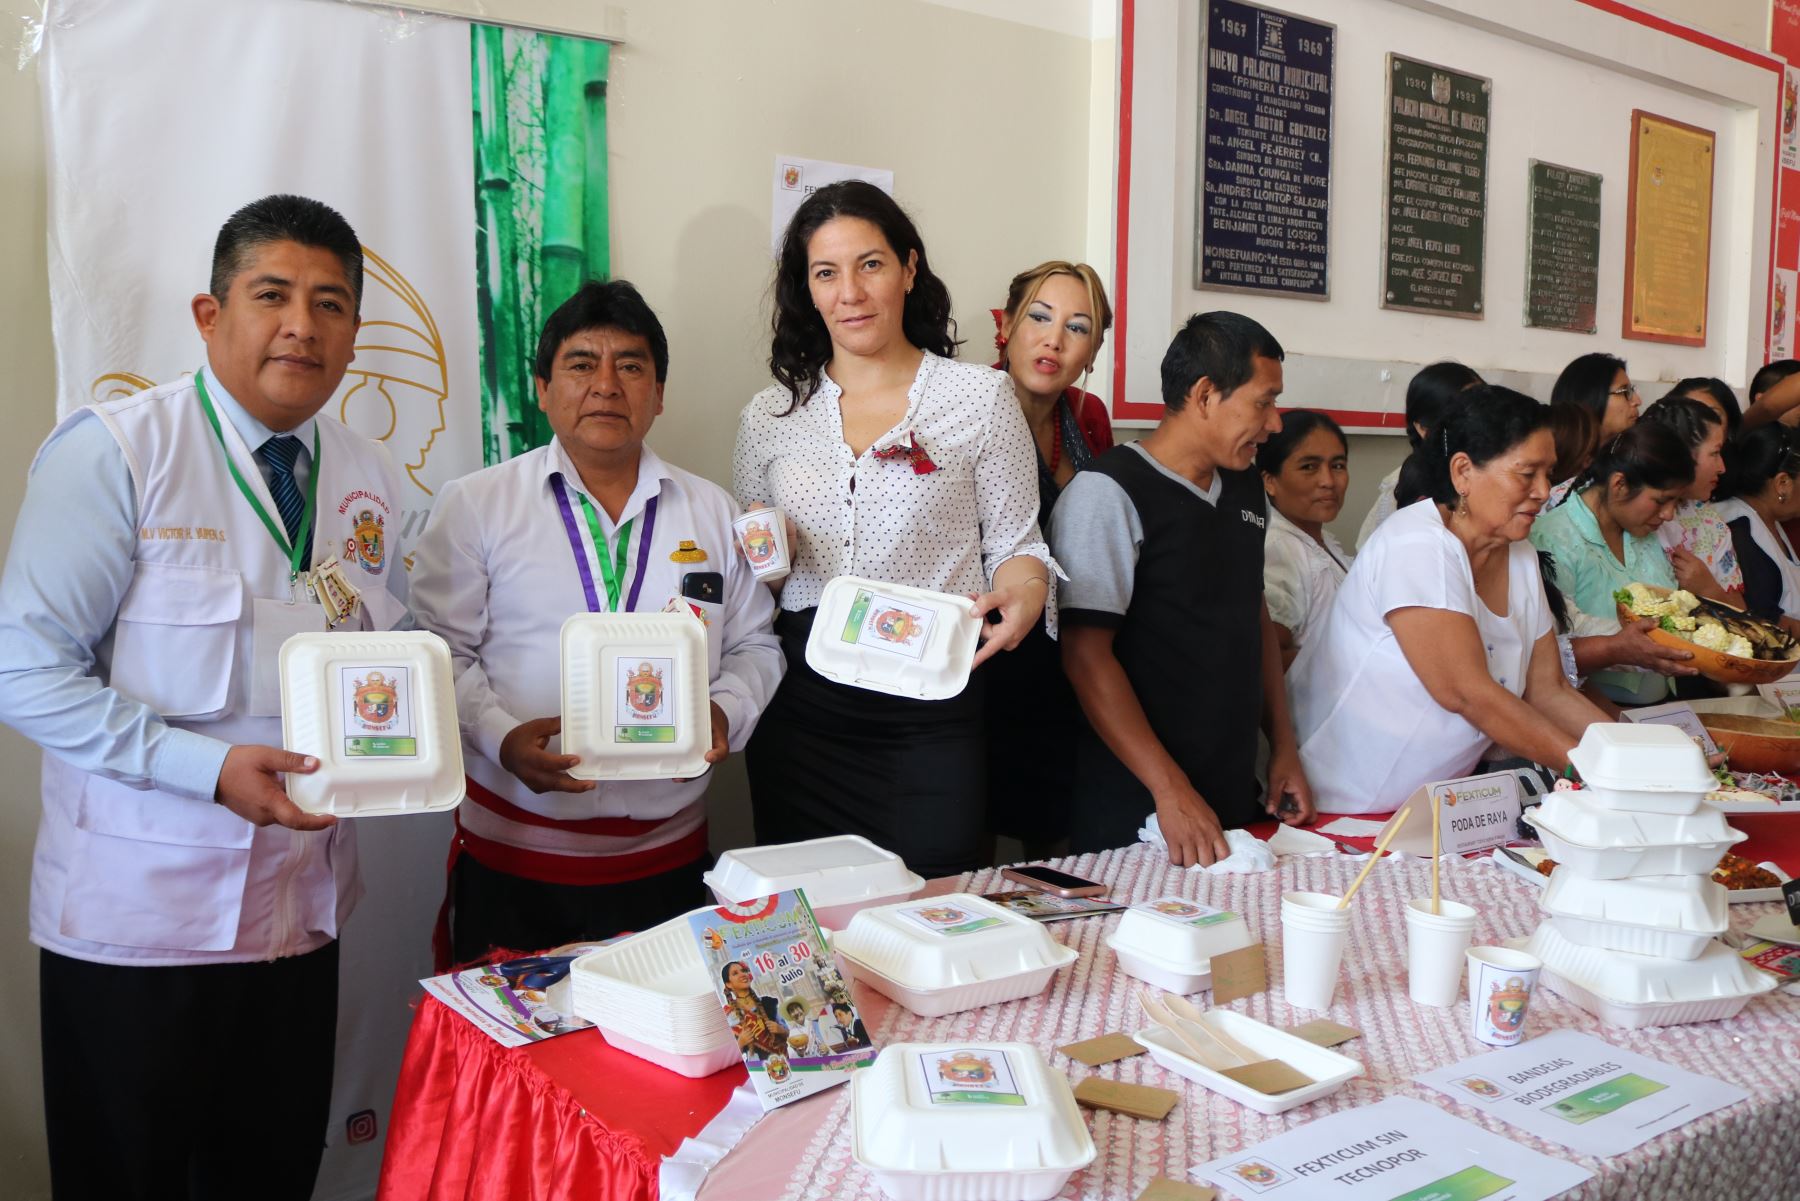 En envases biodegradables hechos de caña de azúcar se sirven los potajes que se ofrecen en la Feria de Exposiciones Típico-Culturales de Monsefú.